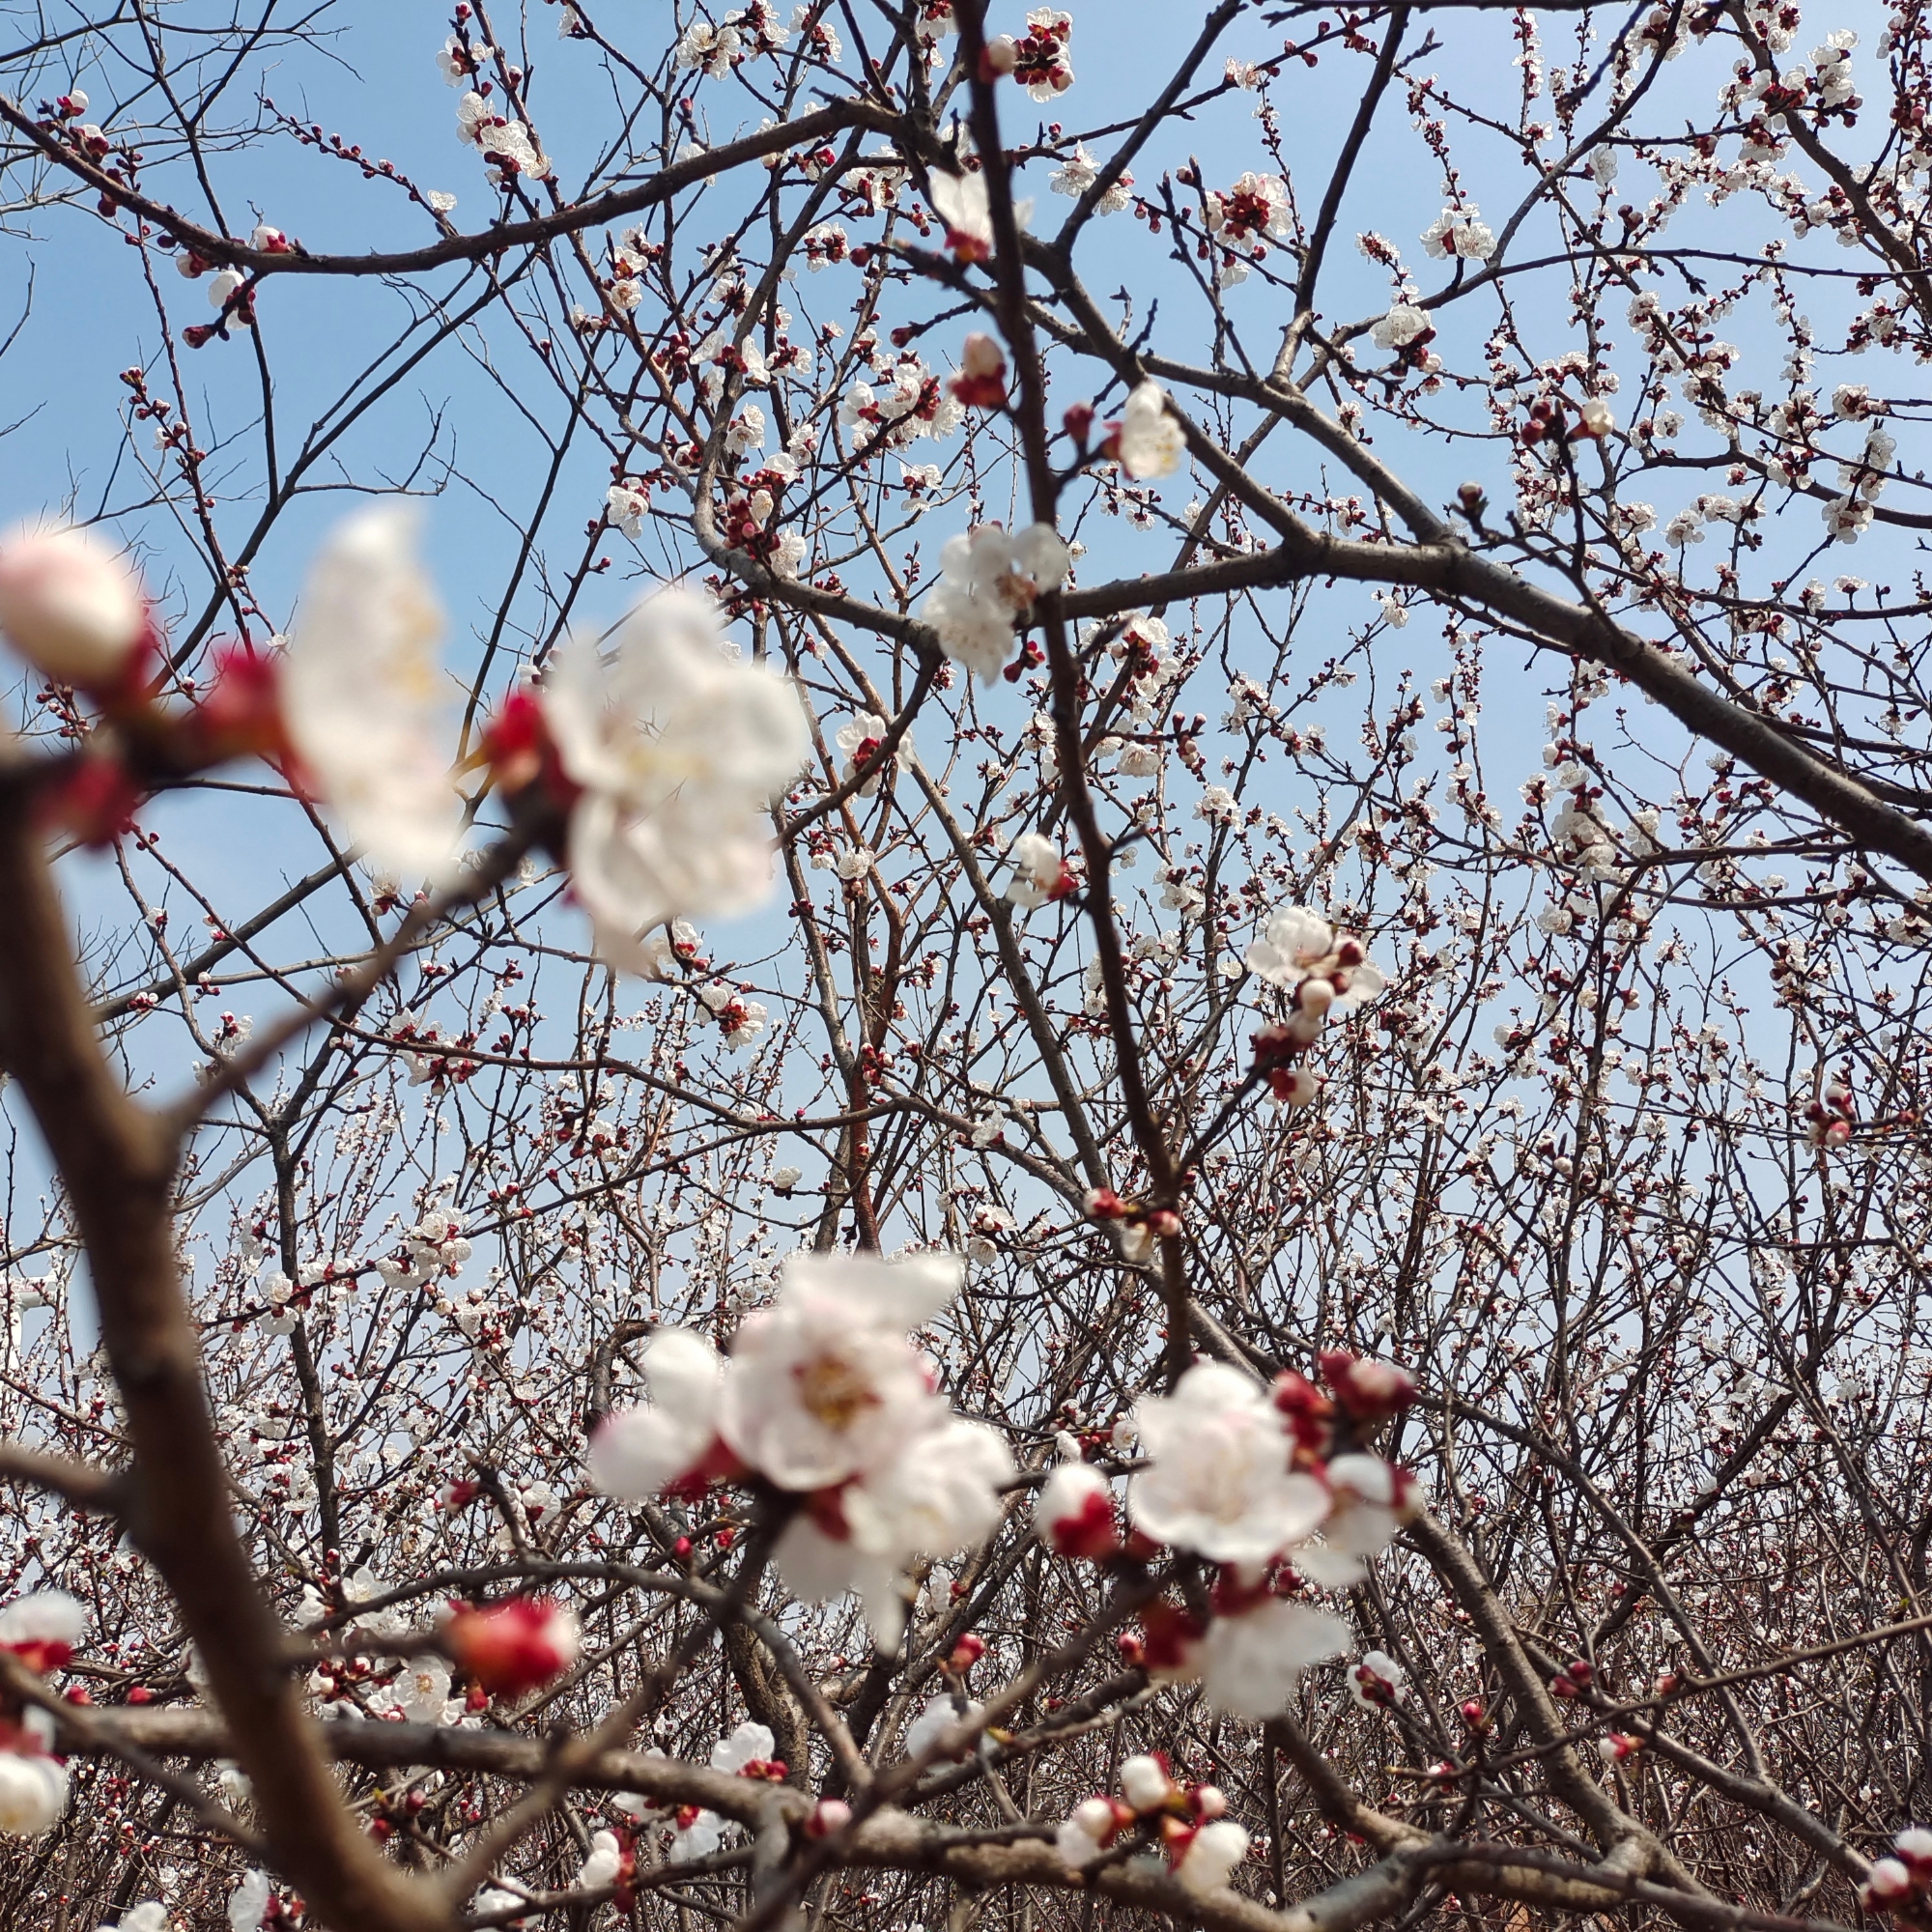 杏花红，梨花白，梅花朵朵沁鼻香，又是一年踏春时，走出家门，处处都是好风景，活在当下，不负春光，愿所有